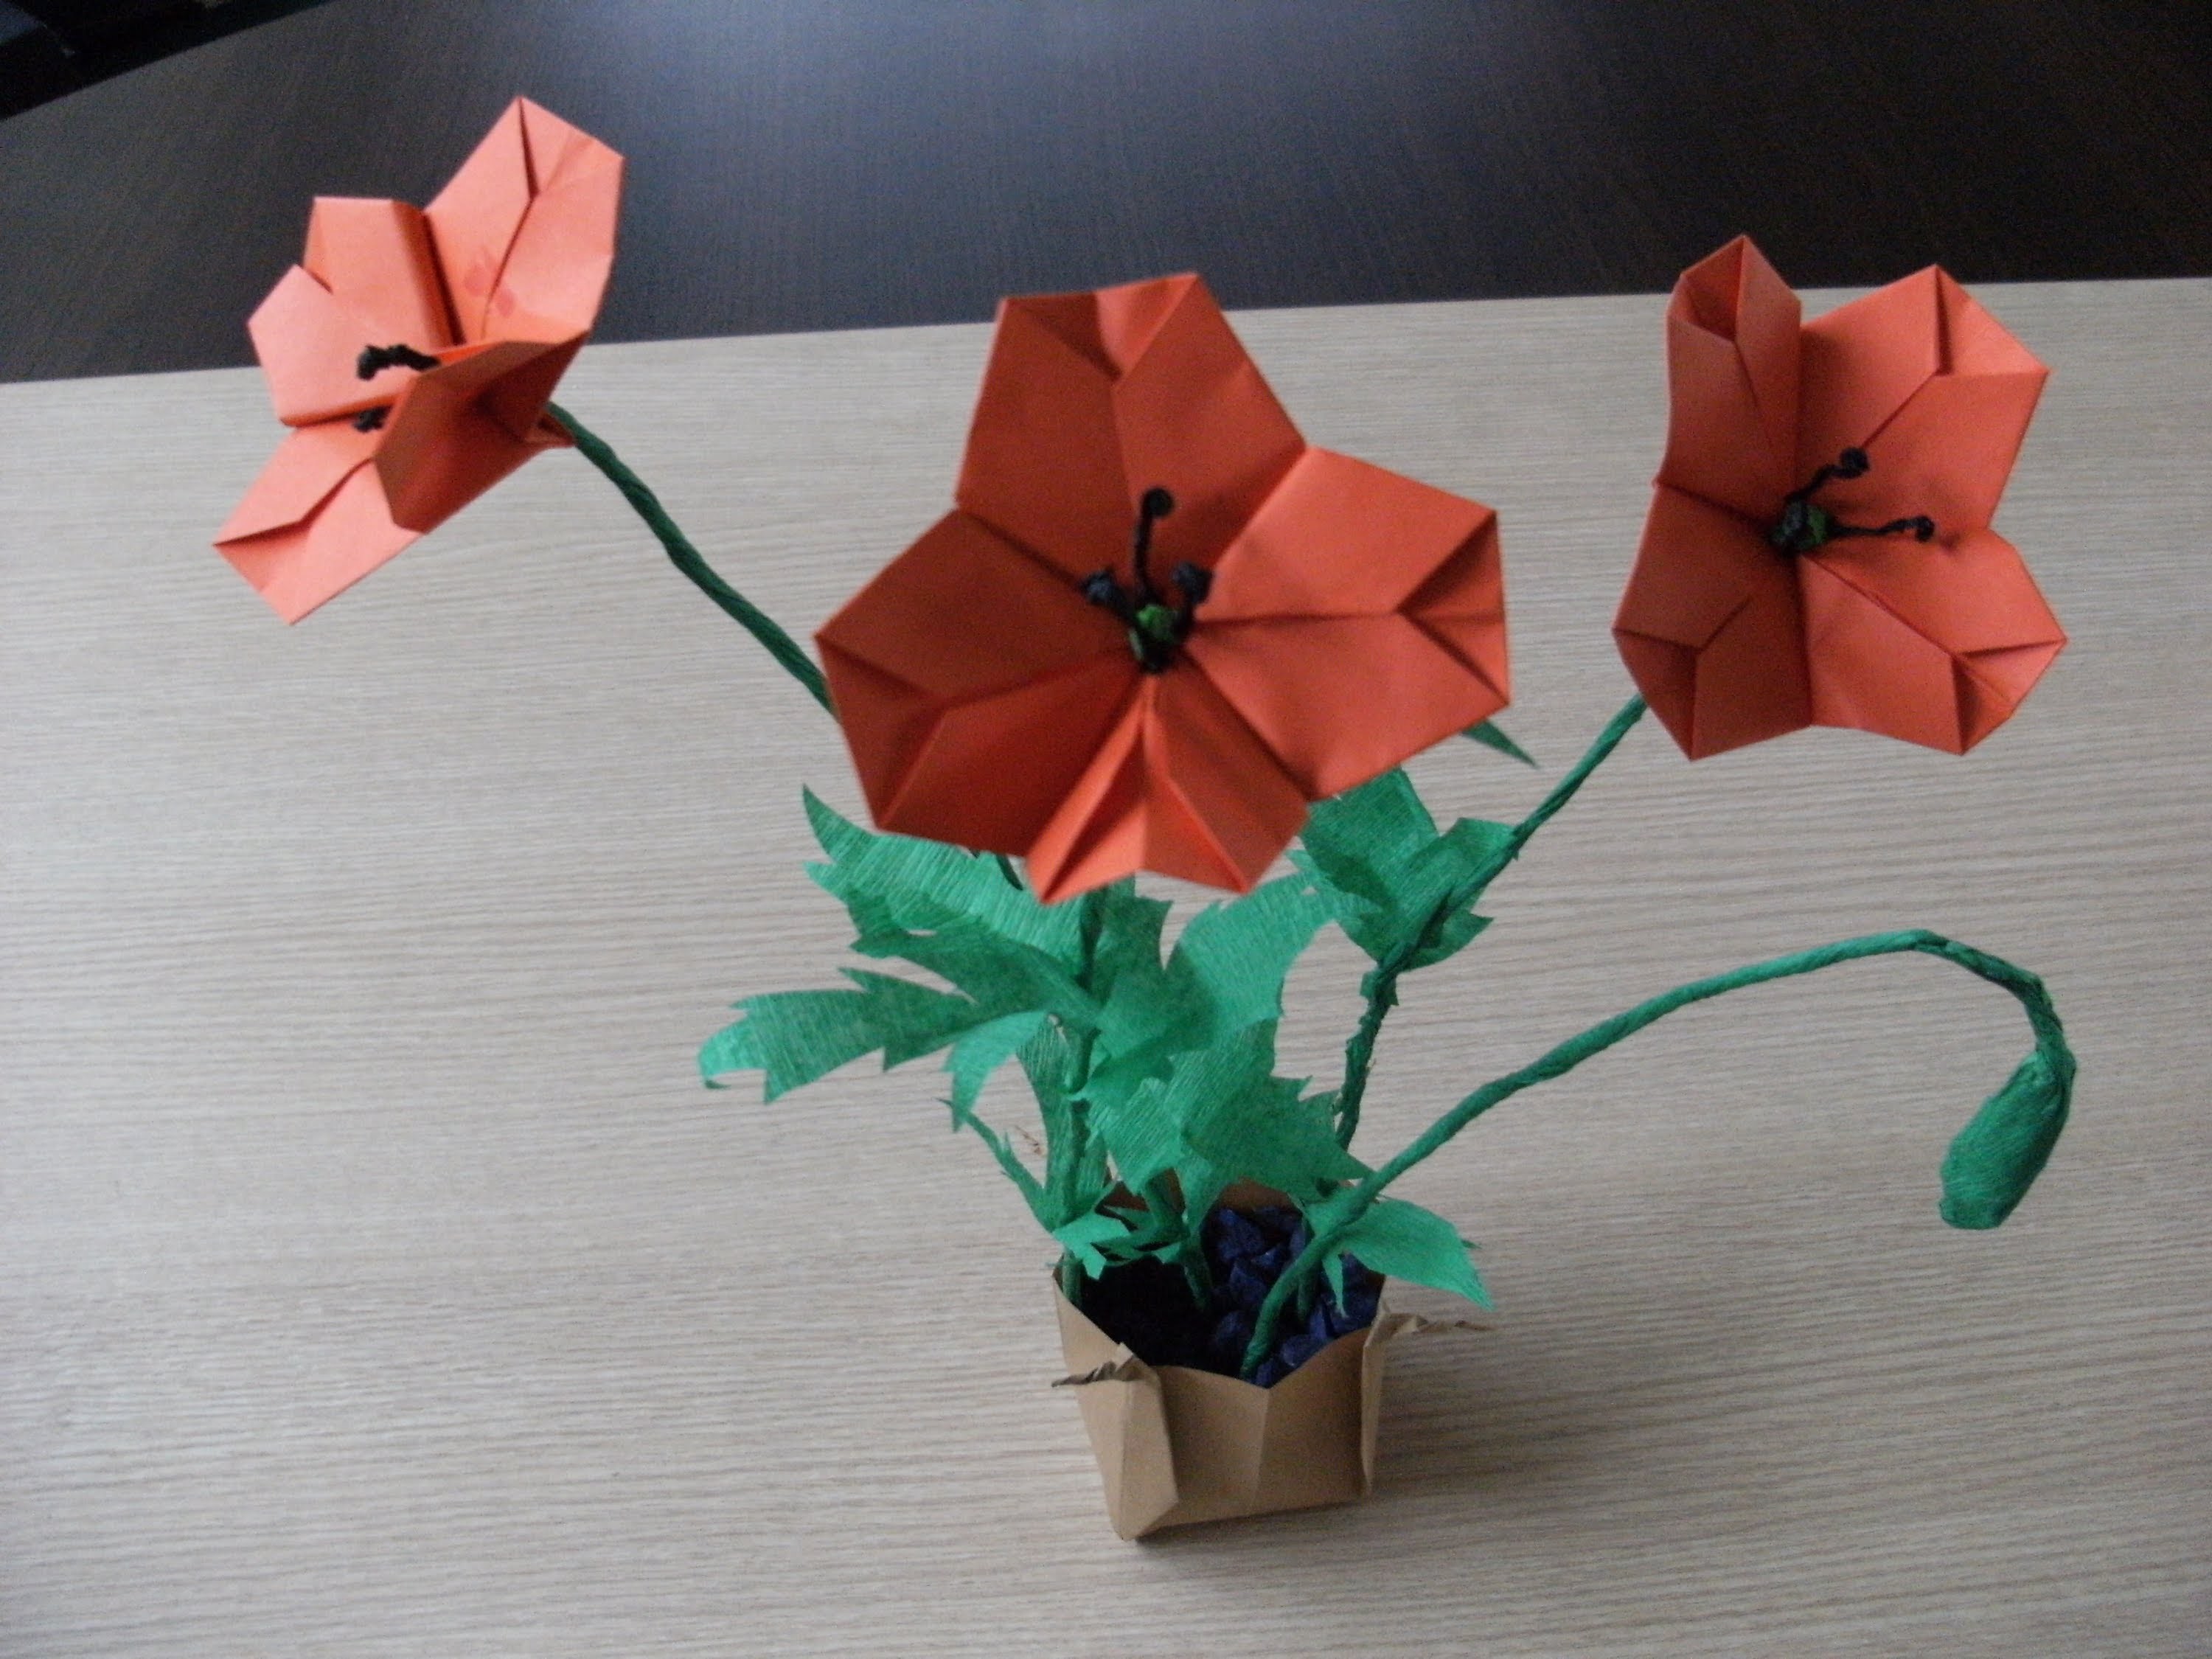 Origami 3d - MAK POLNY - instrukcja jak wykonać